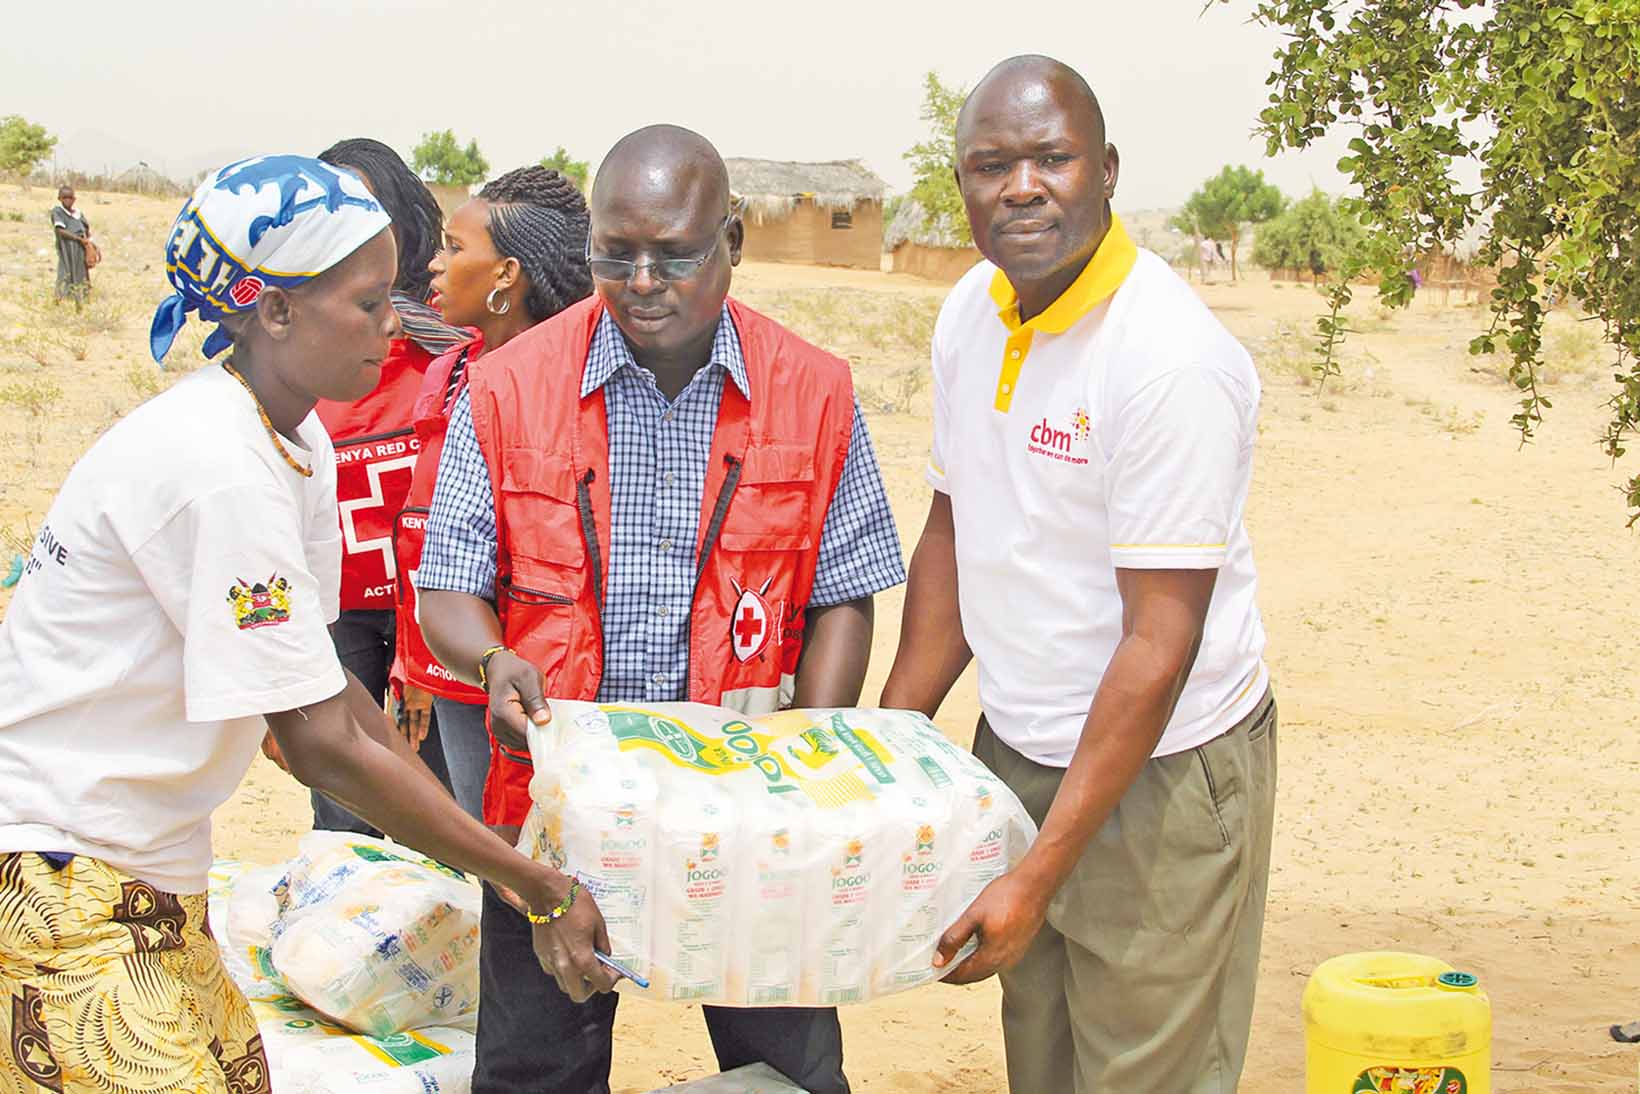 Nothilfemitarbeitende aus Kenia tragen ein Nothilfe-Paket.